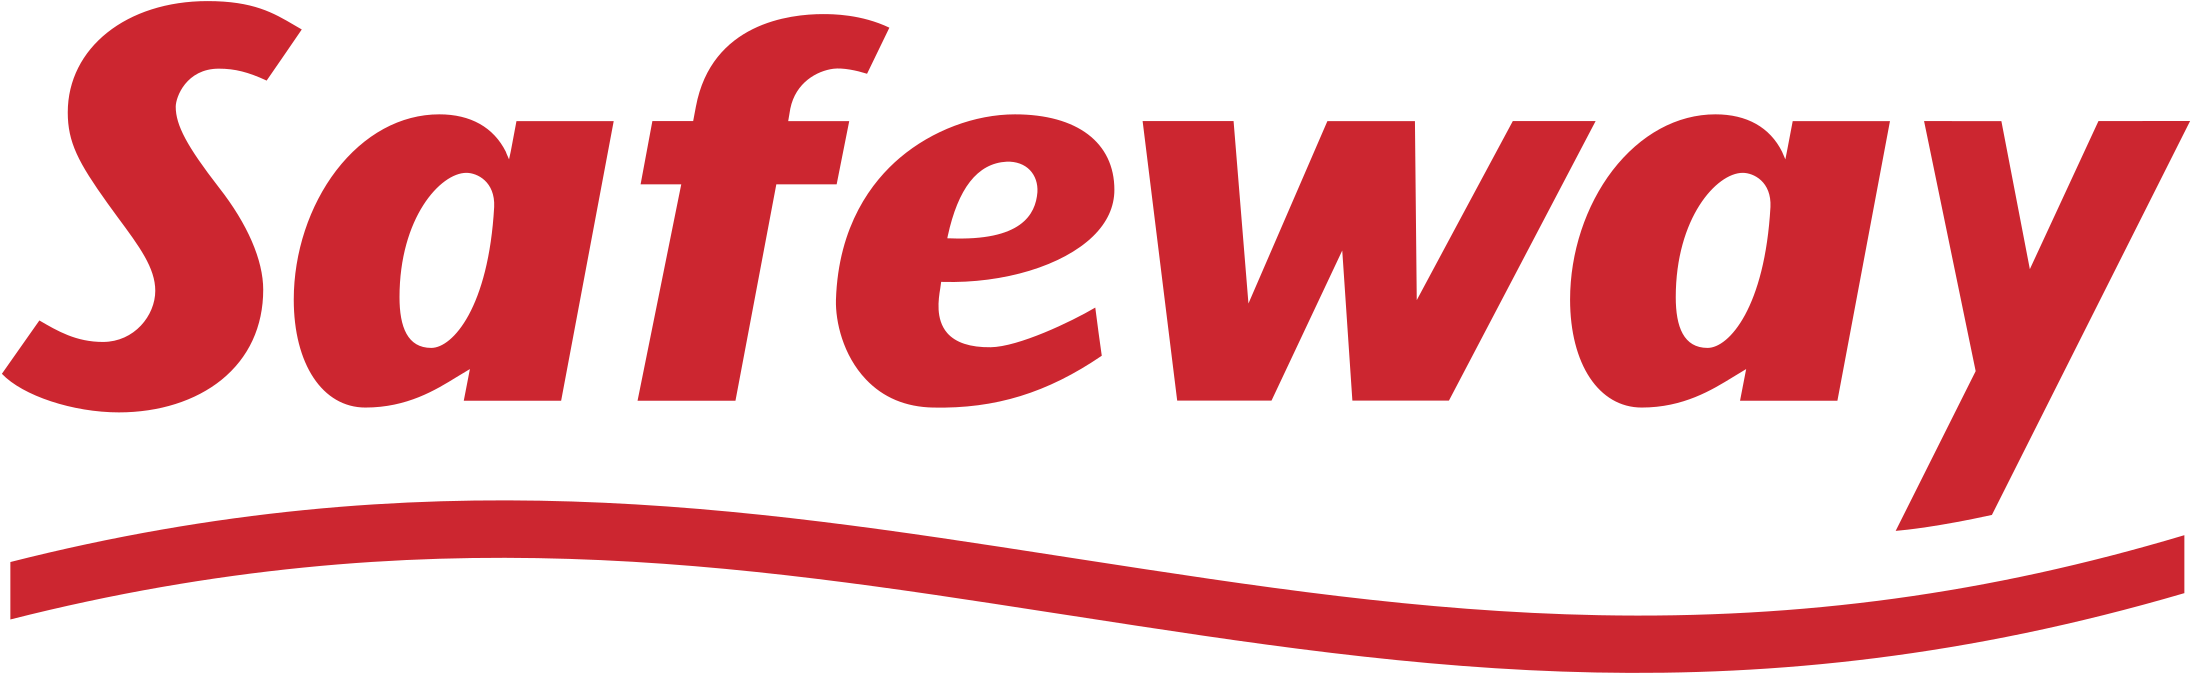 Safeway Logo - Safeway Logo Png Transparent - Safeway Logo Uk | Full Size PNG ...